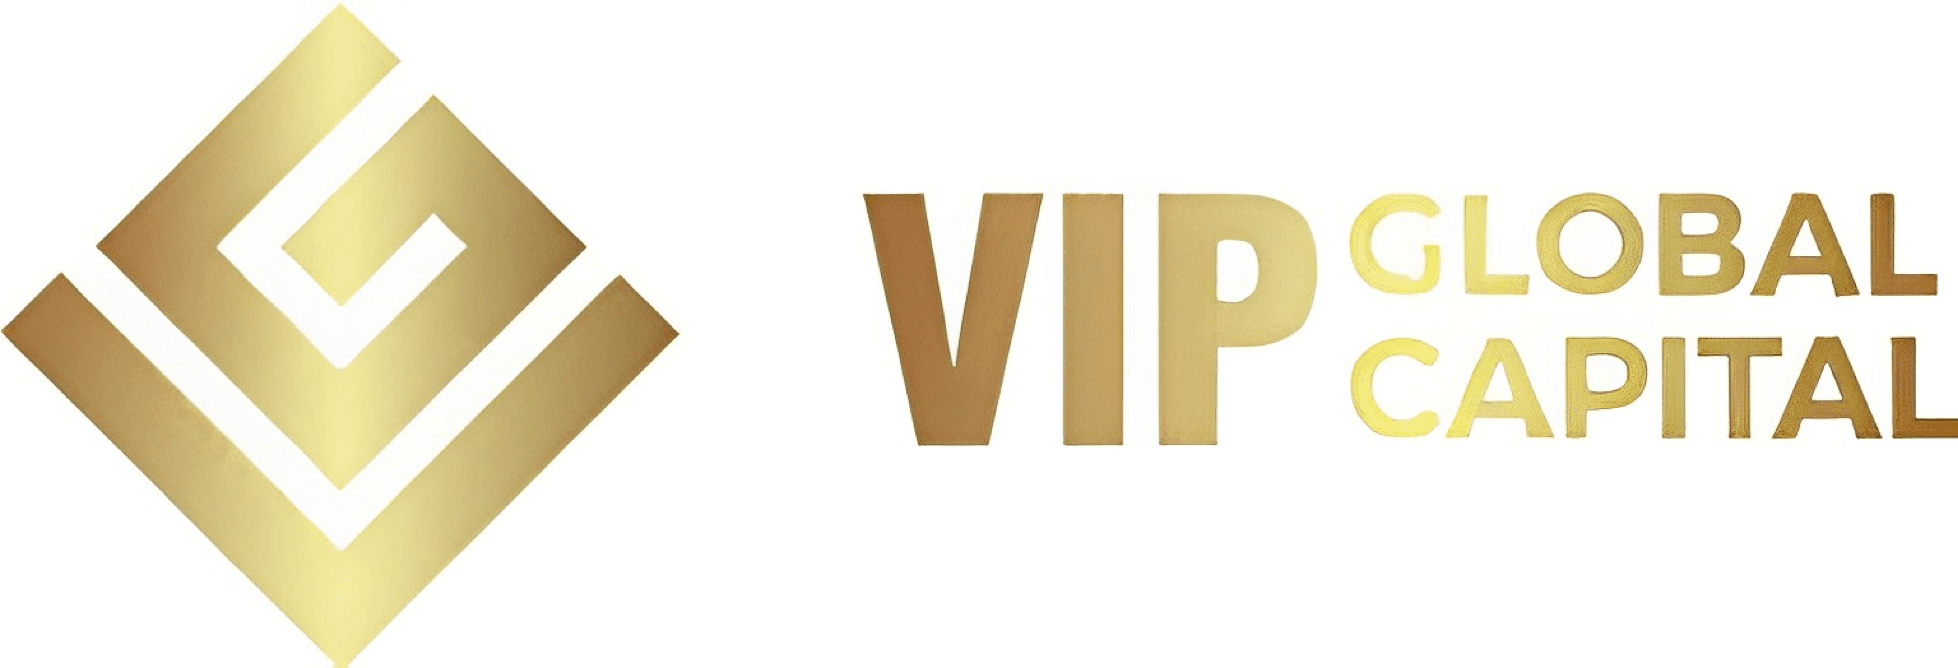 VIPGlobal Capital